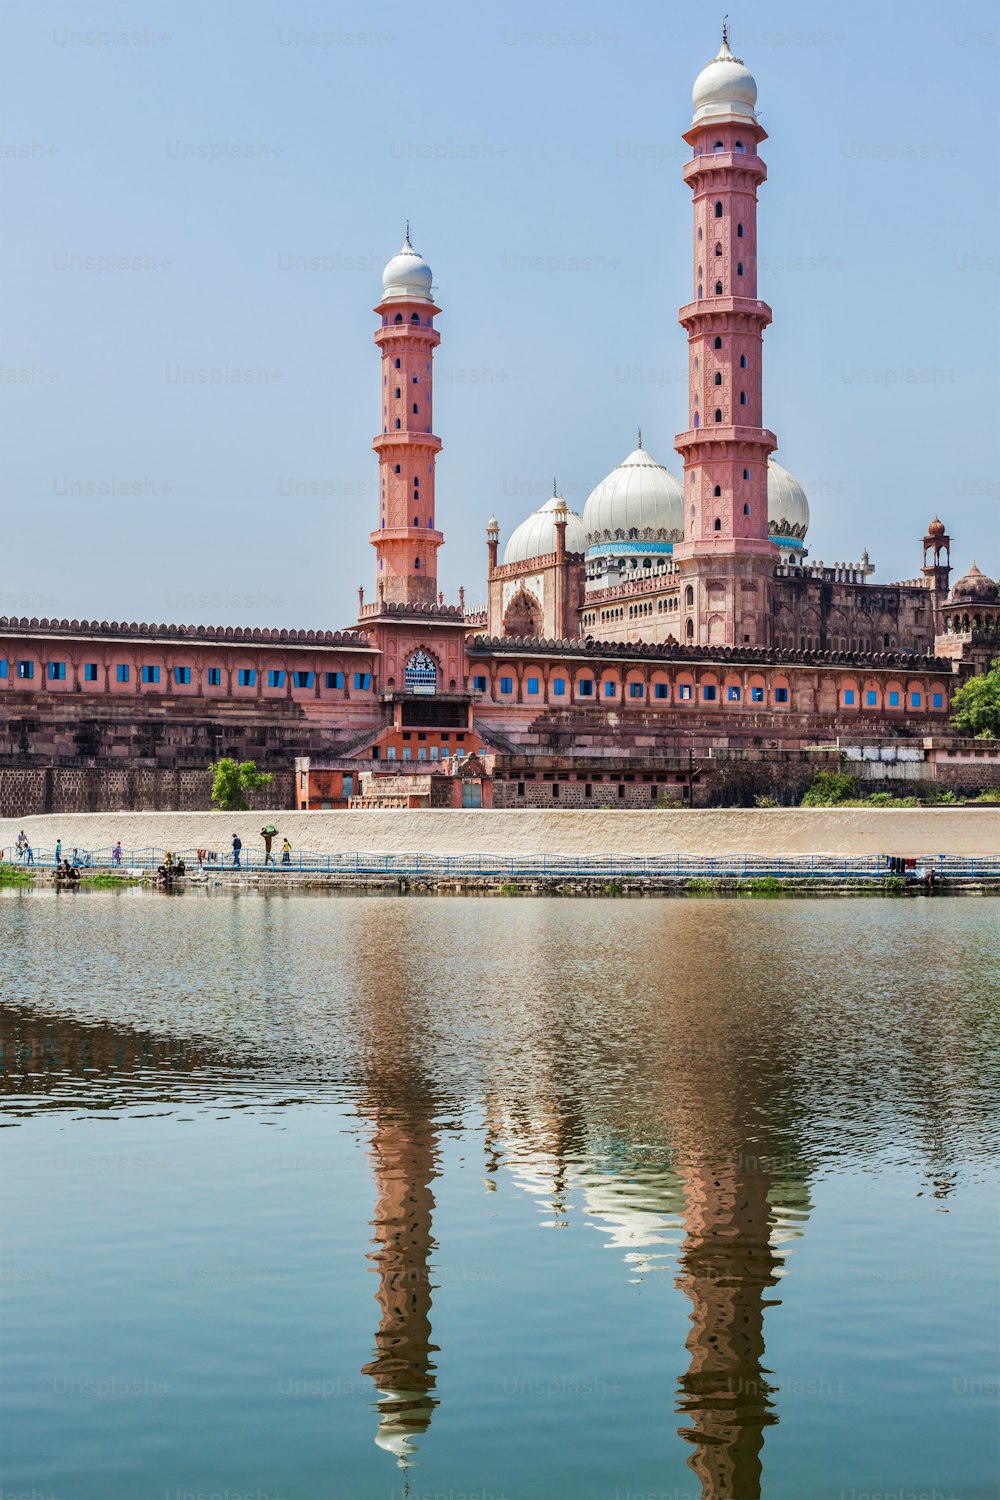 Taj-ul-Masajid (également orthographié Taj-ul-Masjid) - la plus grande mosquée de l’Inde. Bhopal, État du Madhya Pradesh, Inde